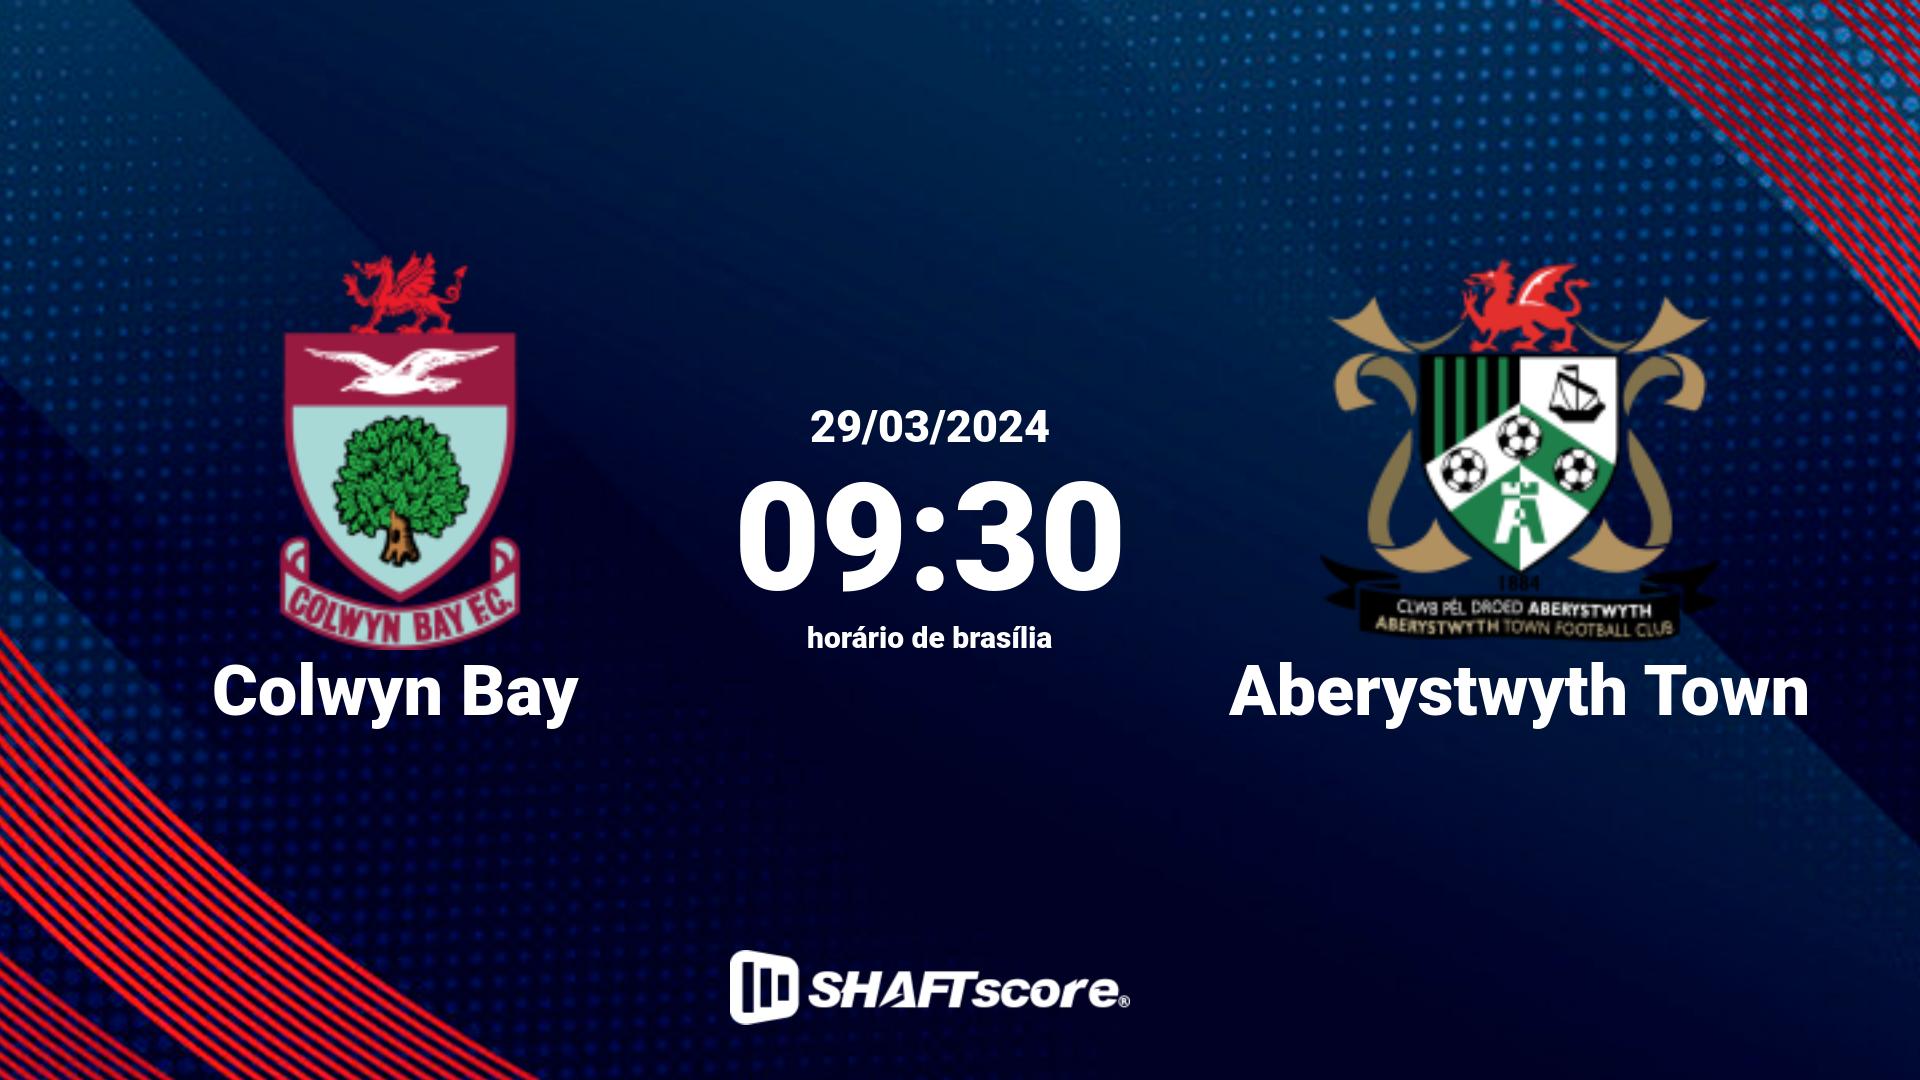 Estatísticas do jogo Colwyn Bay vs Aberystwyth Town 29.03 09:30